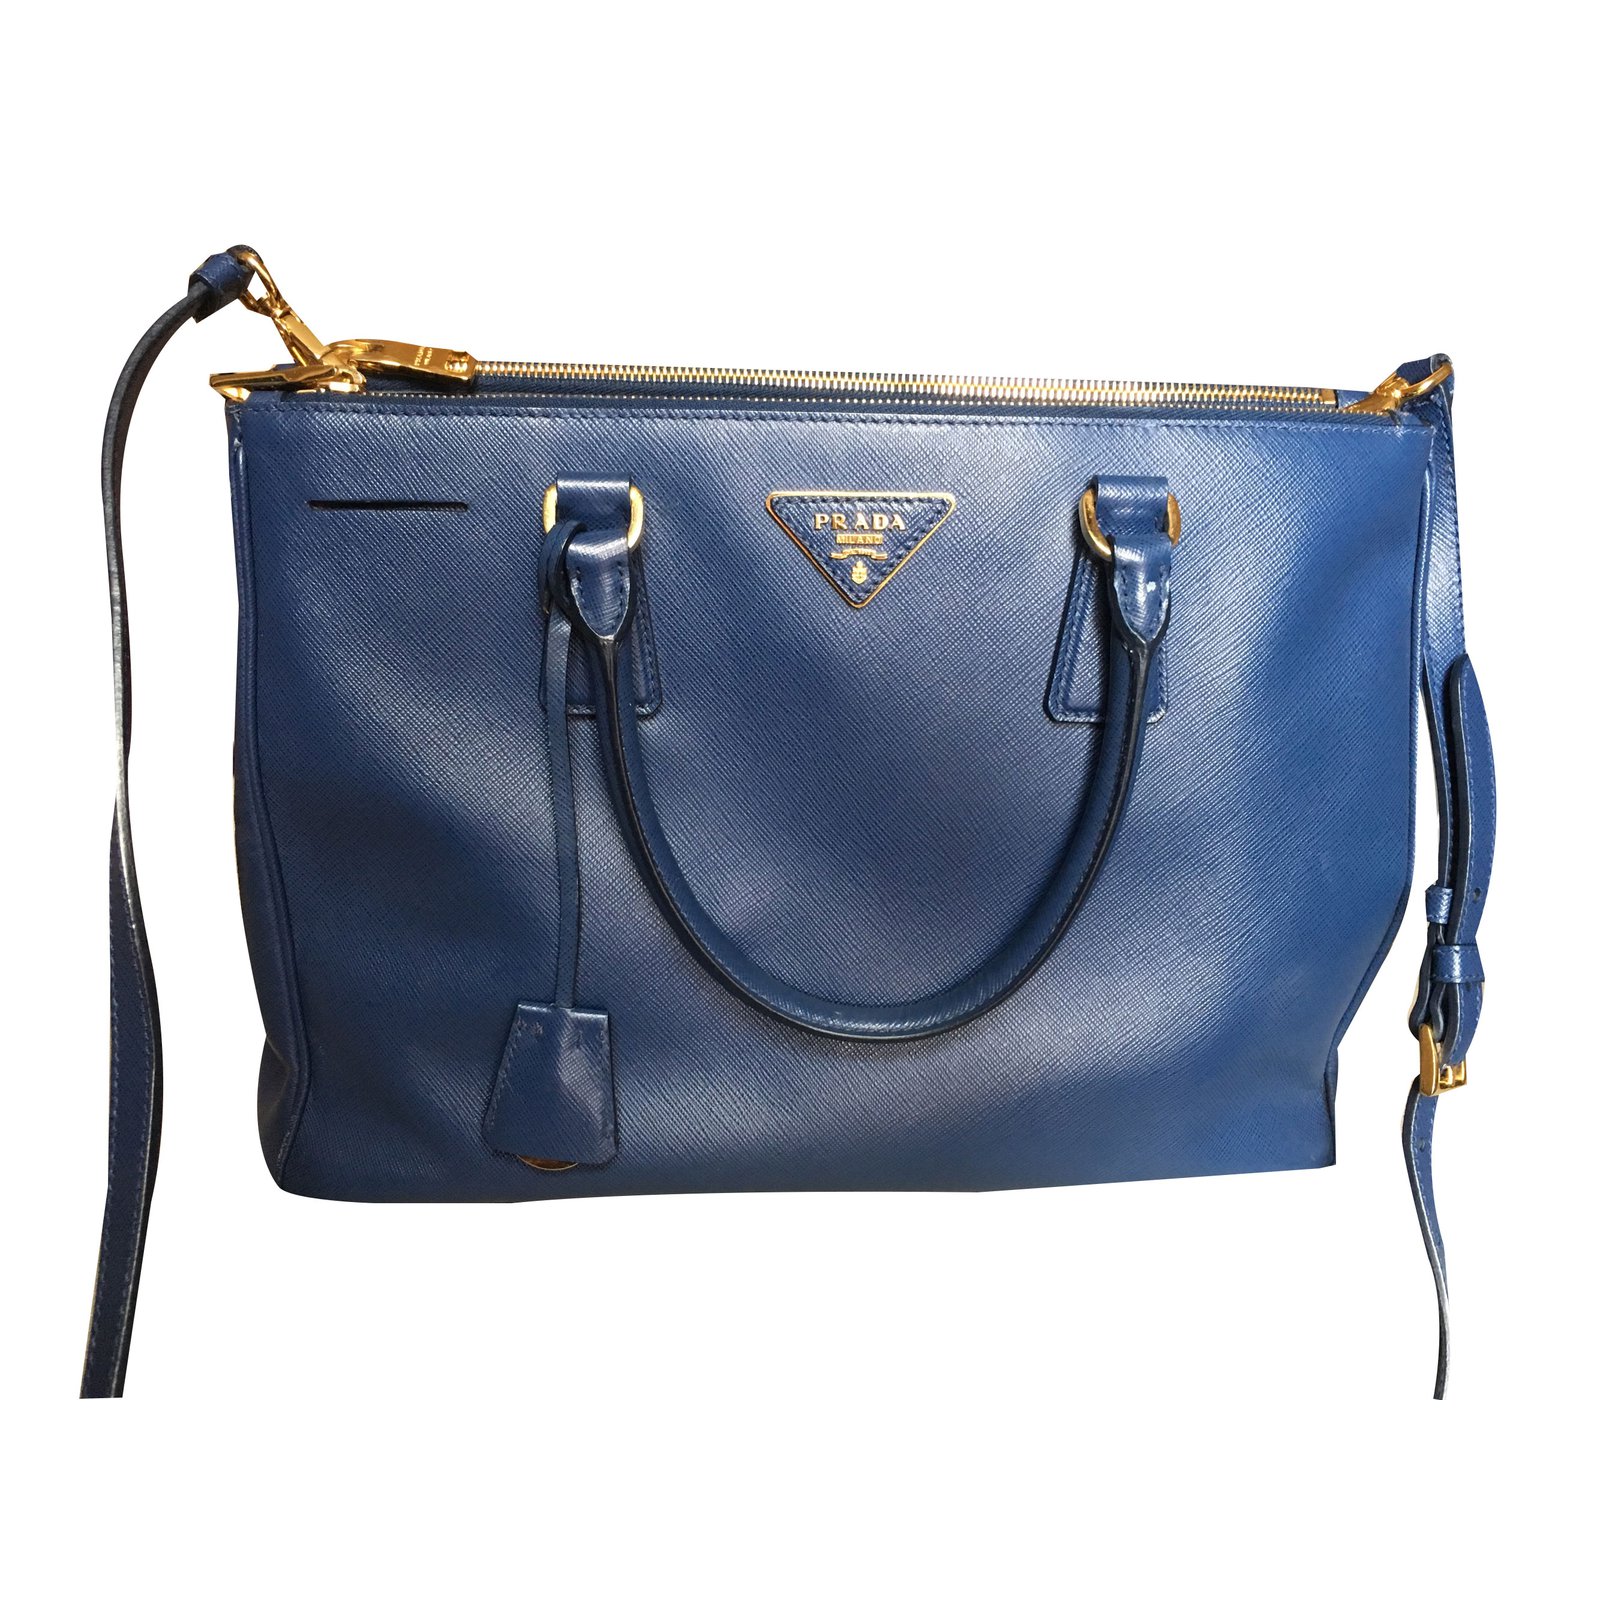 prada handbag blue